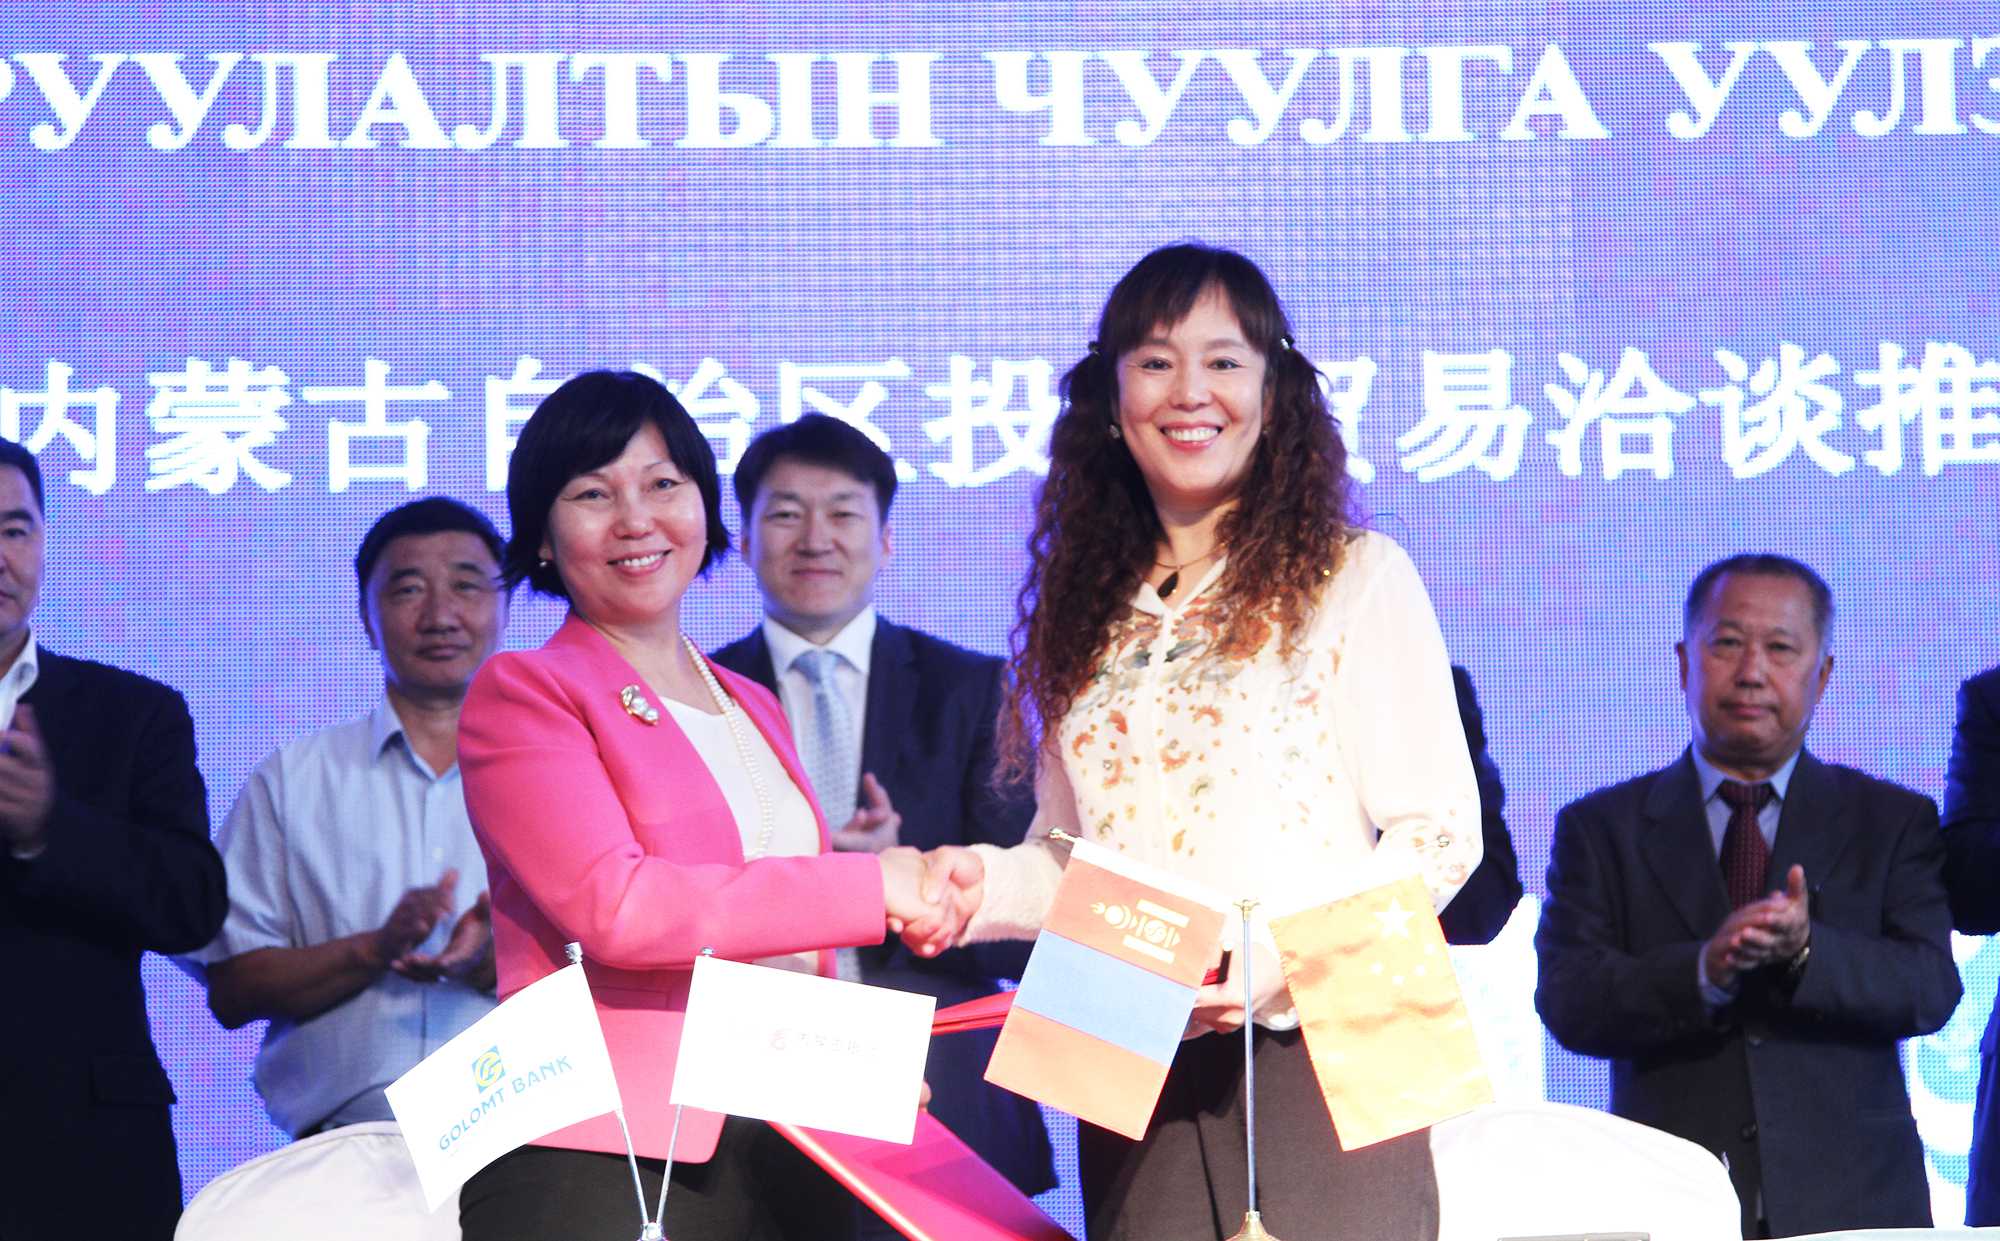 Голомт банк Монгол улс болон БНХАУ-ын ӨМӨЗО-ны бизнес эрхлэгчдийг холбох гүүр нь байна